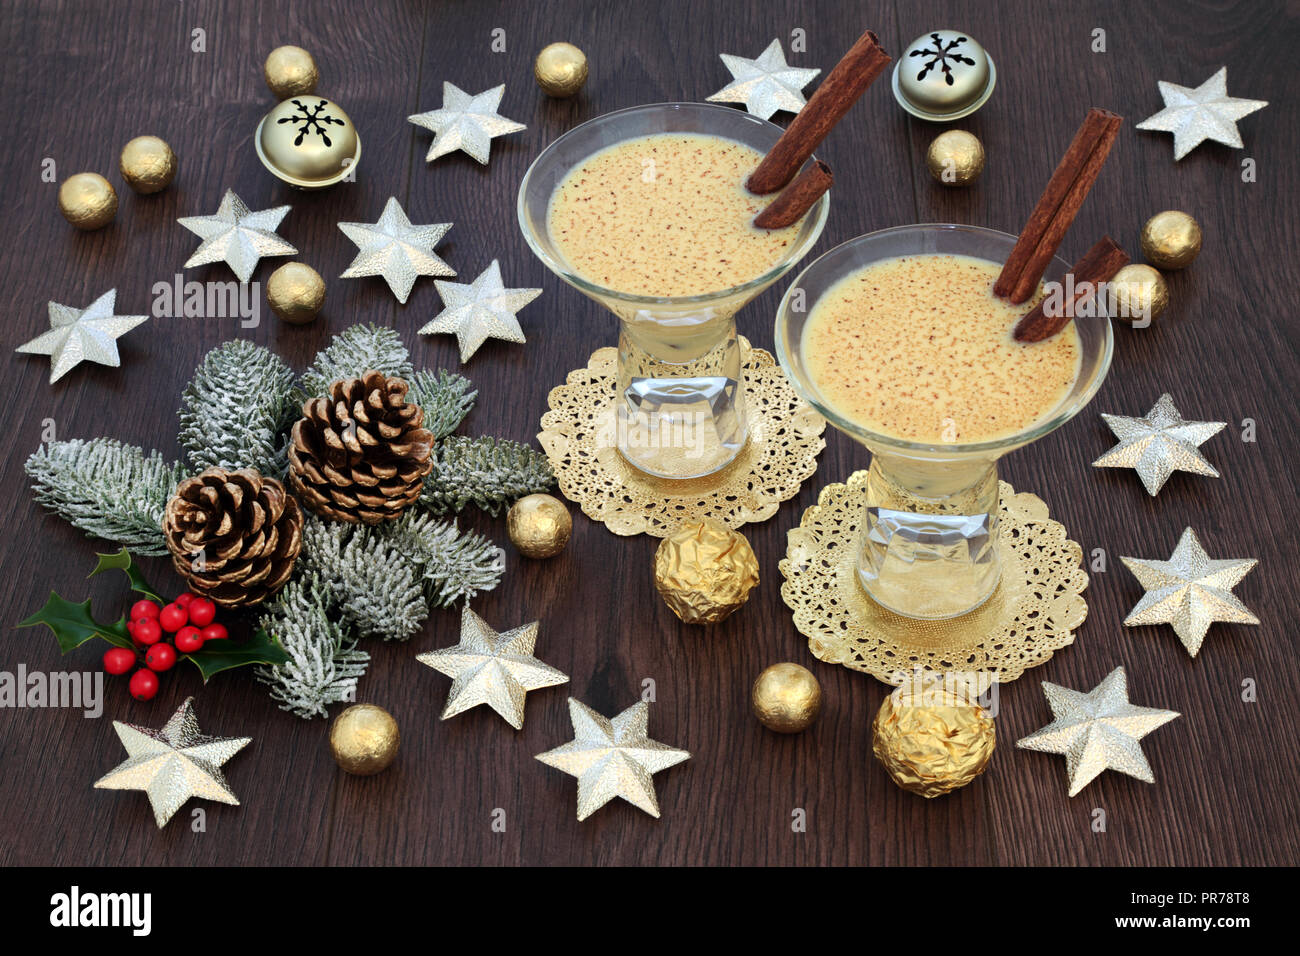 Zabaione tradizionale drink di Natale con stella in oro e decorazioni a campana, stagnola avvolto le sfere di cioccolato, con flora invernale di holly, abete e pigne Foto Stock